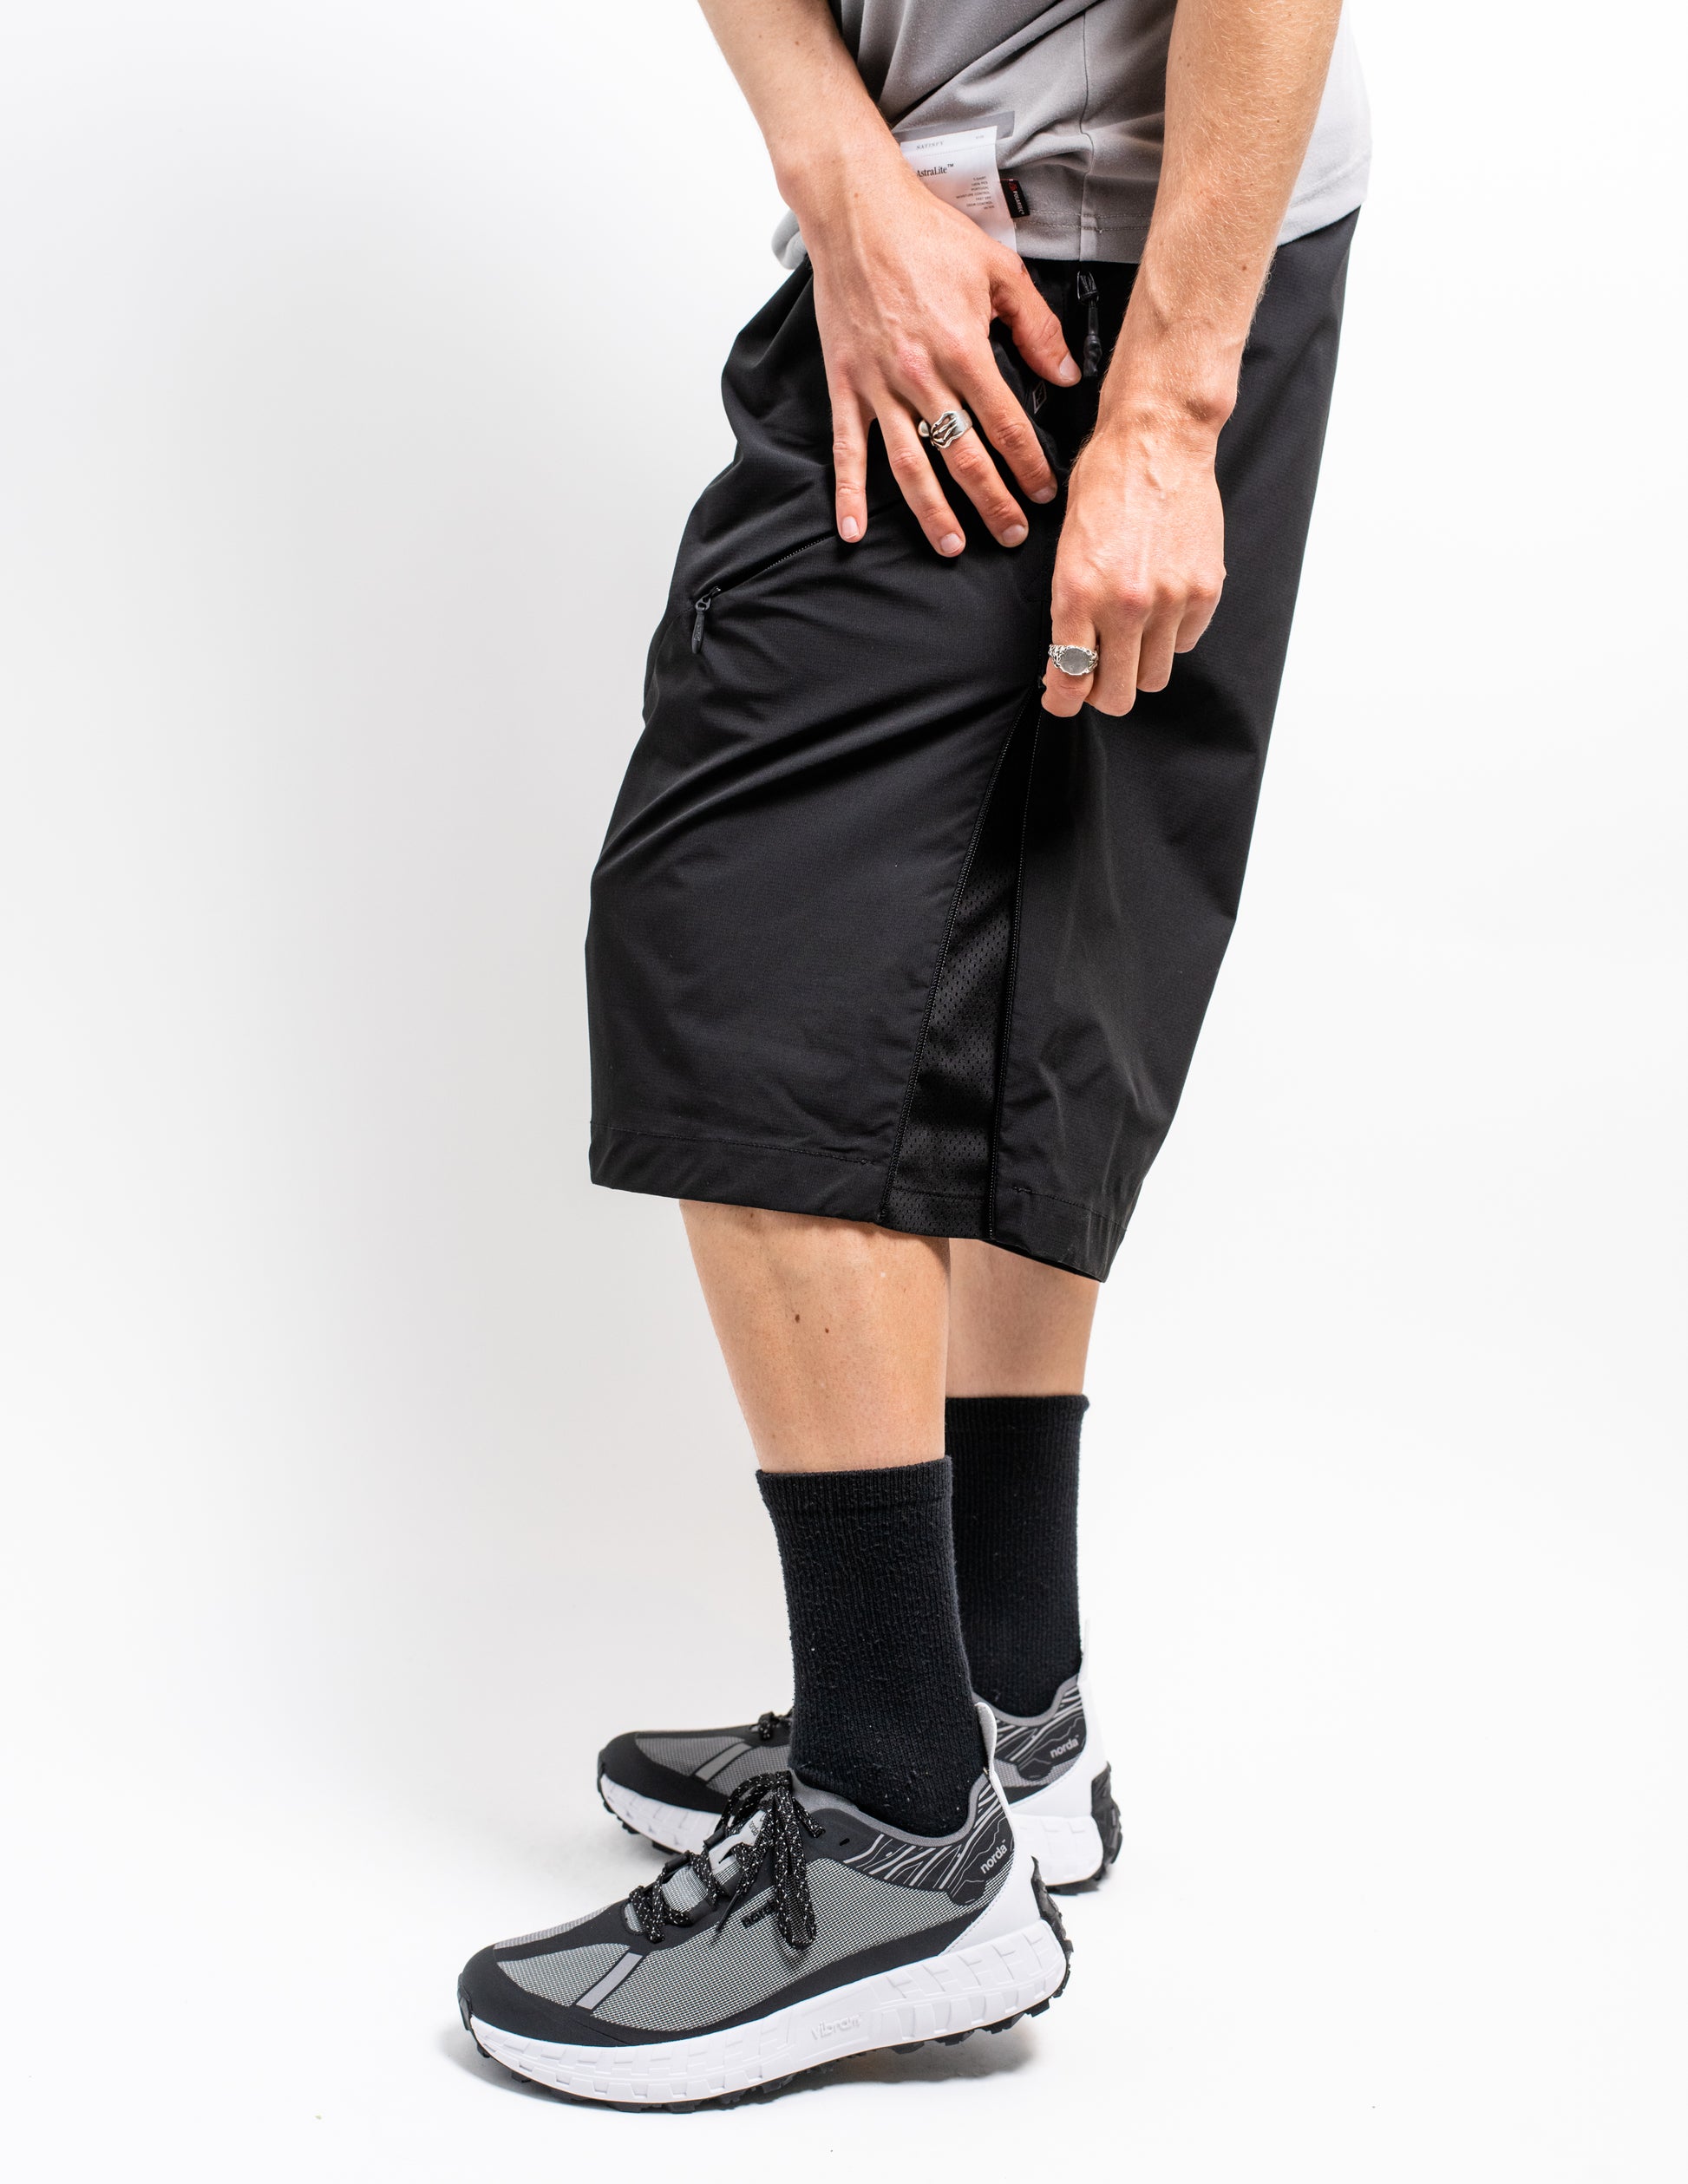 gorpcore oversized nylon shorts from Japan